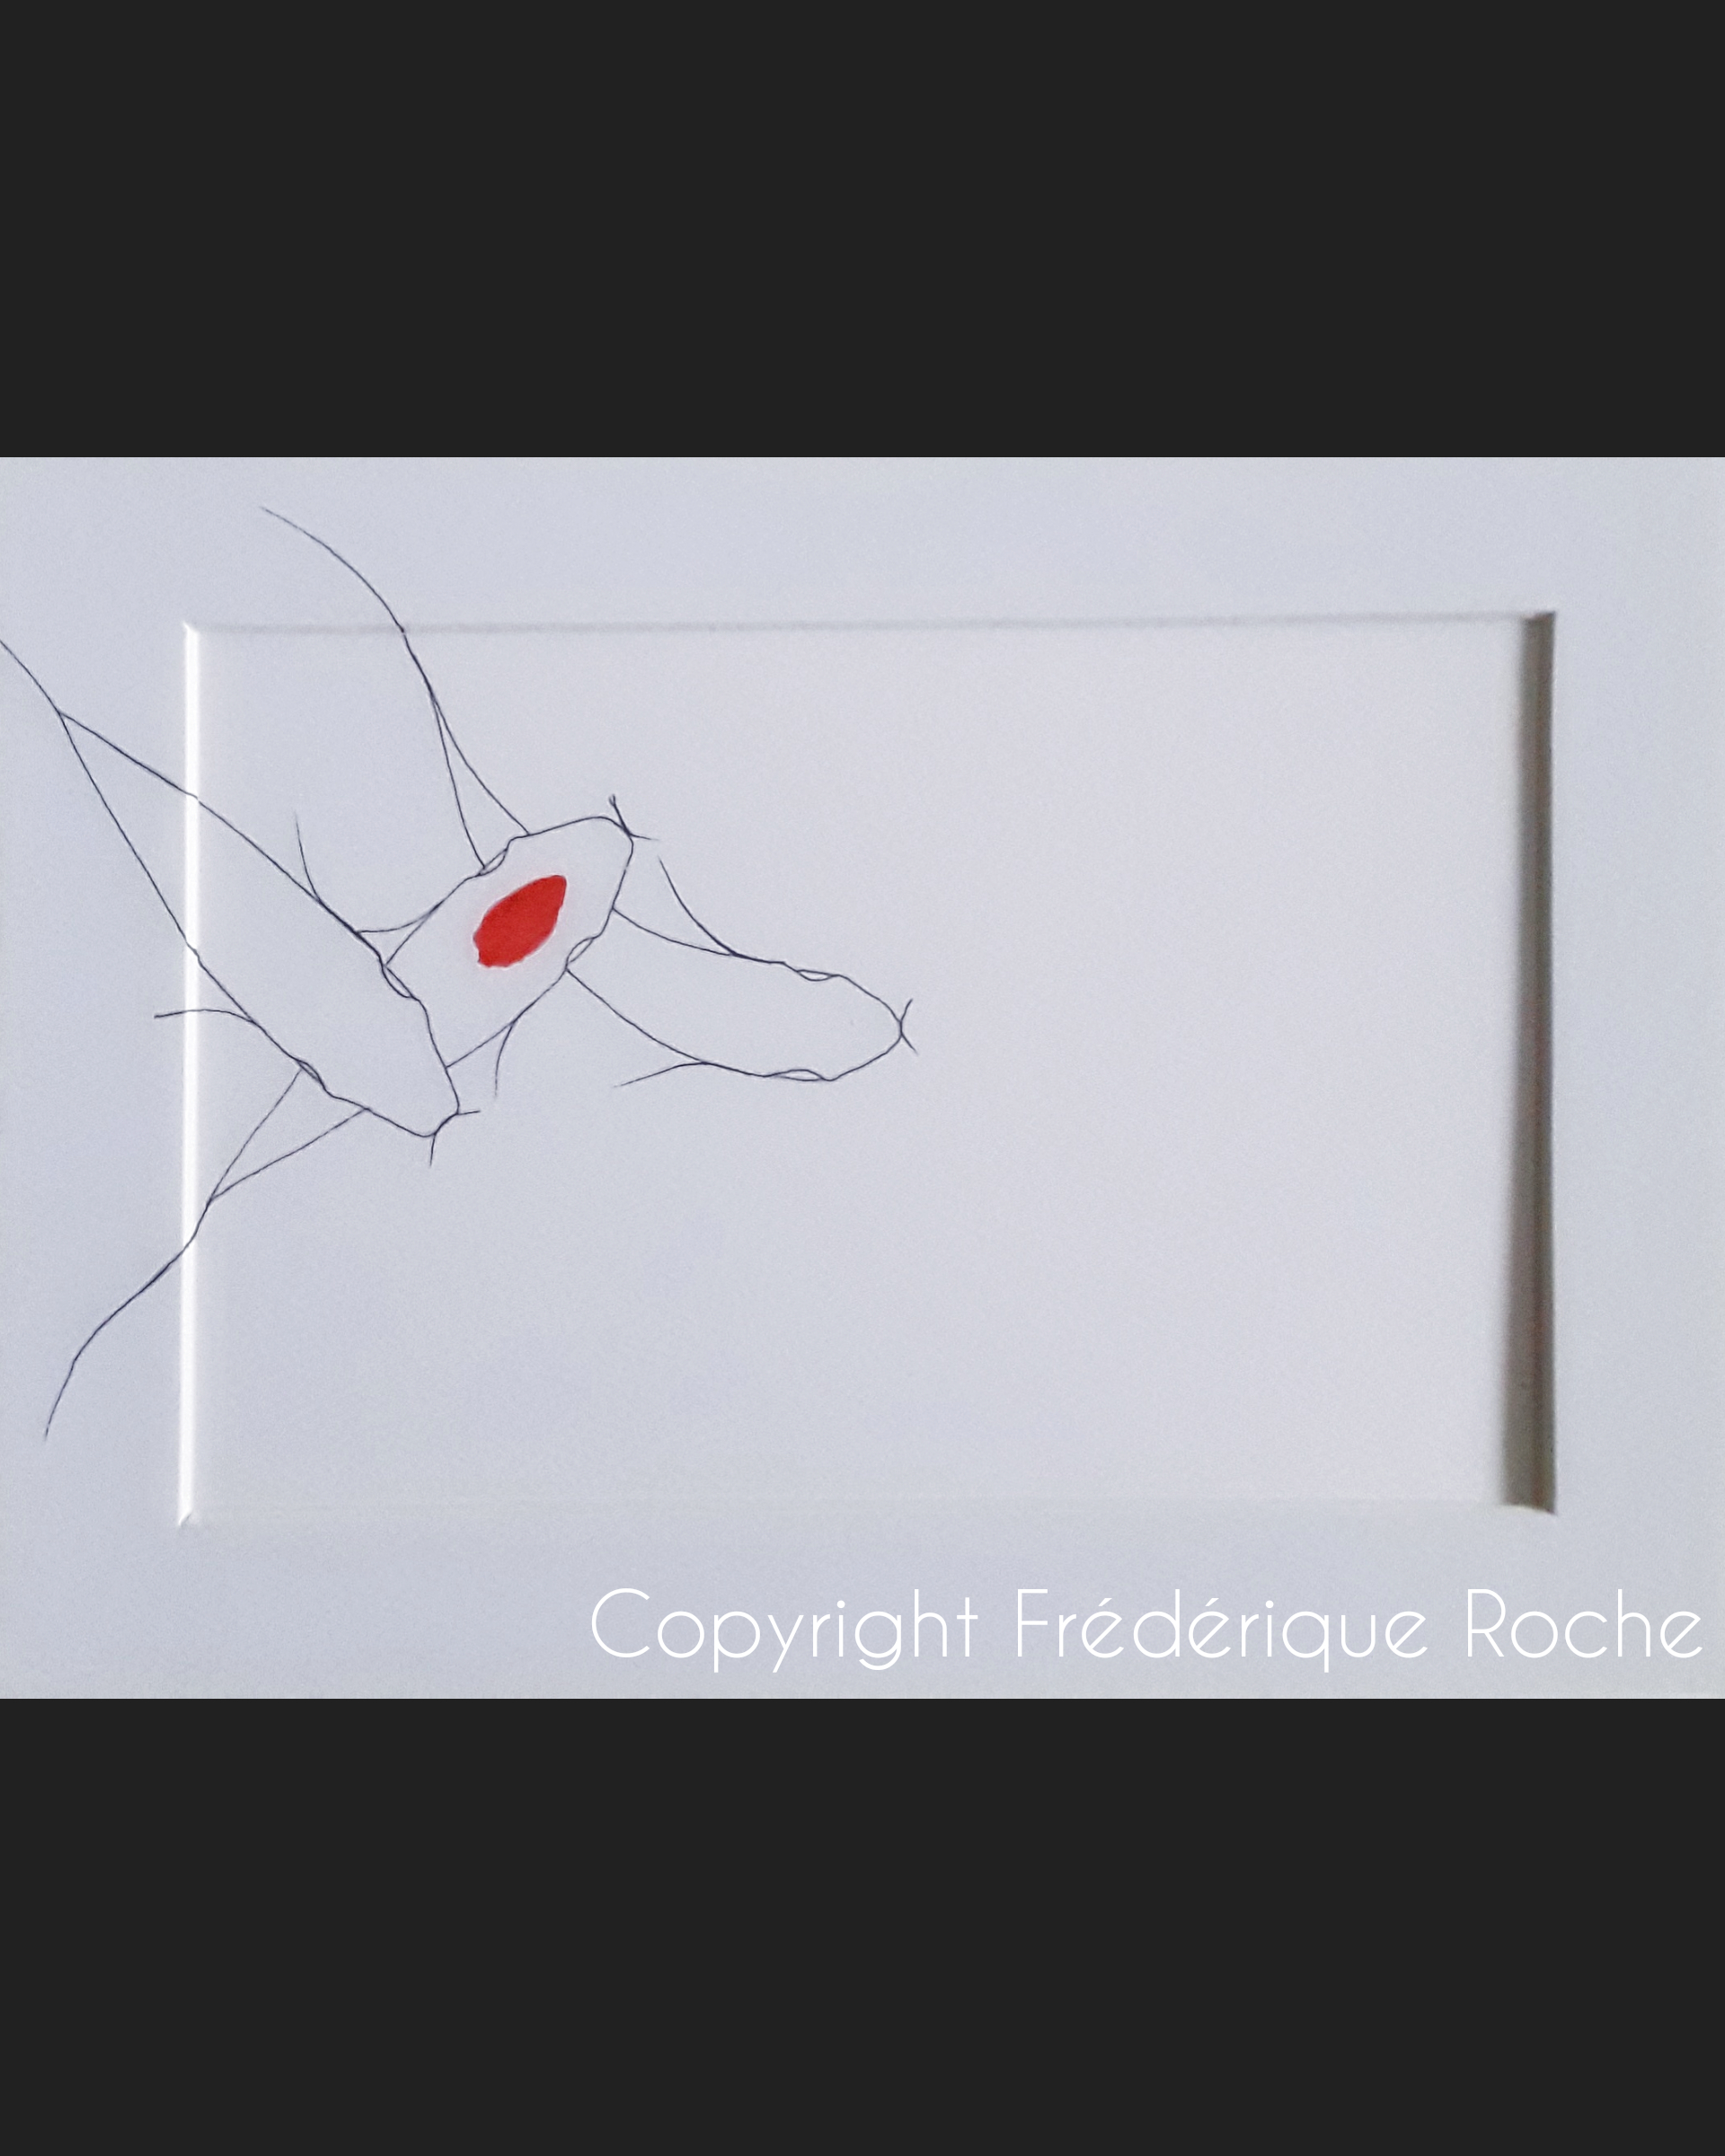 Frederique Roche Artiste Peintre Creation Originale